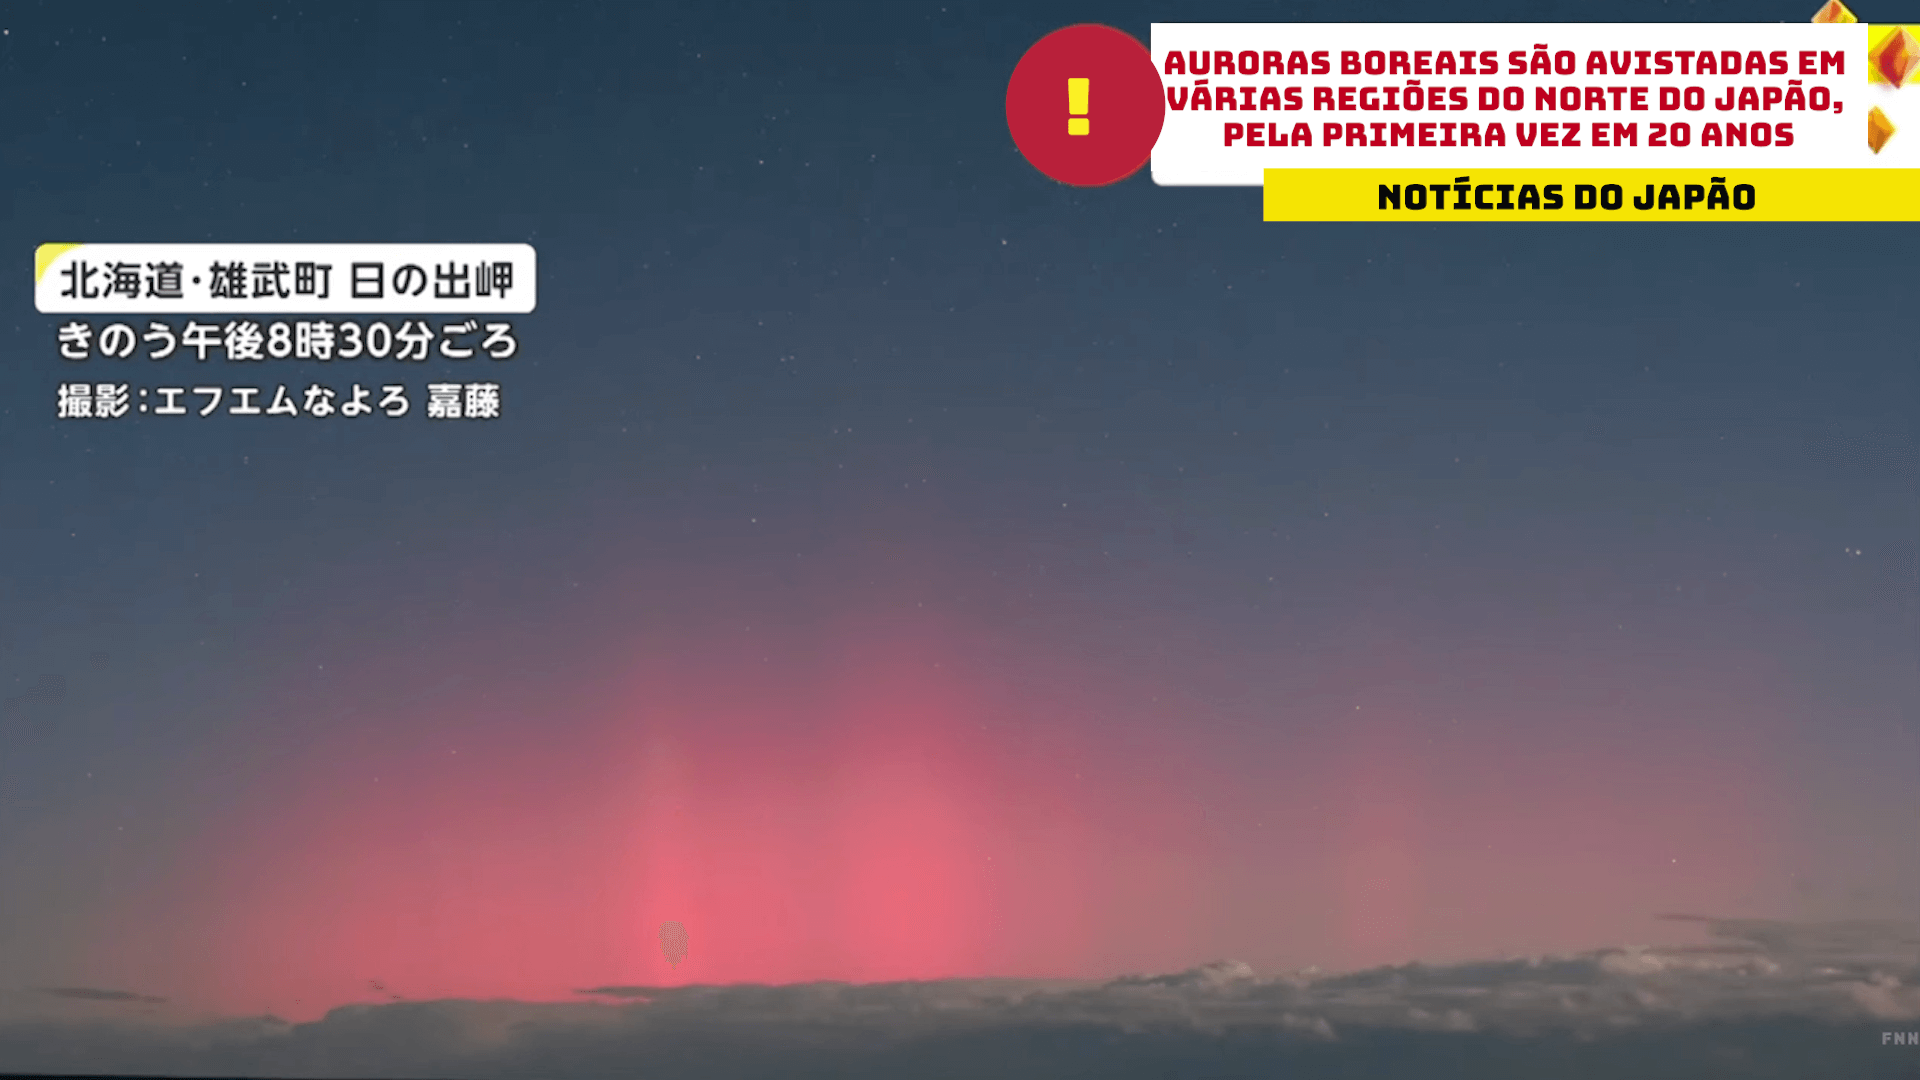 Auroras boreais são avistadas em várias regiões do norte do Japão, pela primeira vez em 20 anos